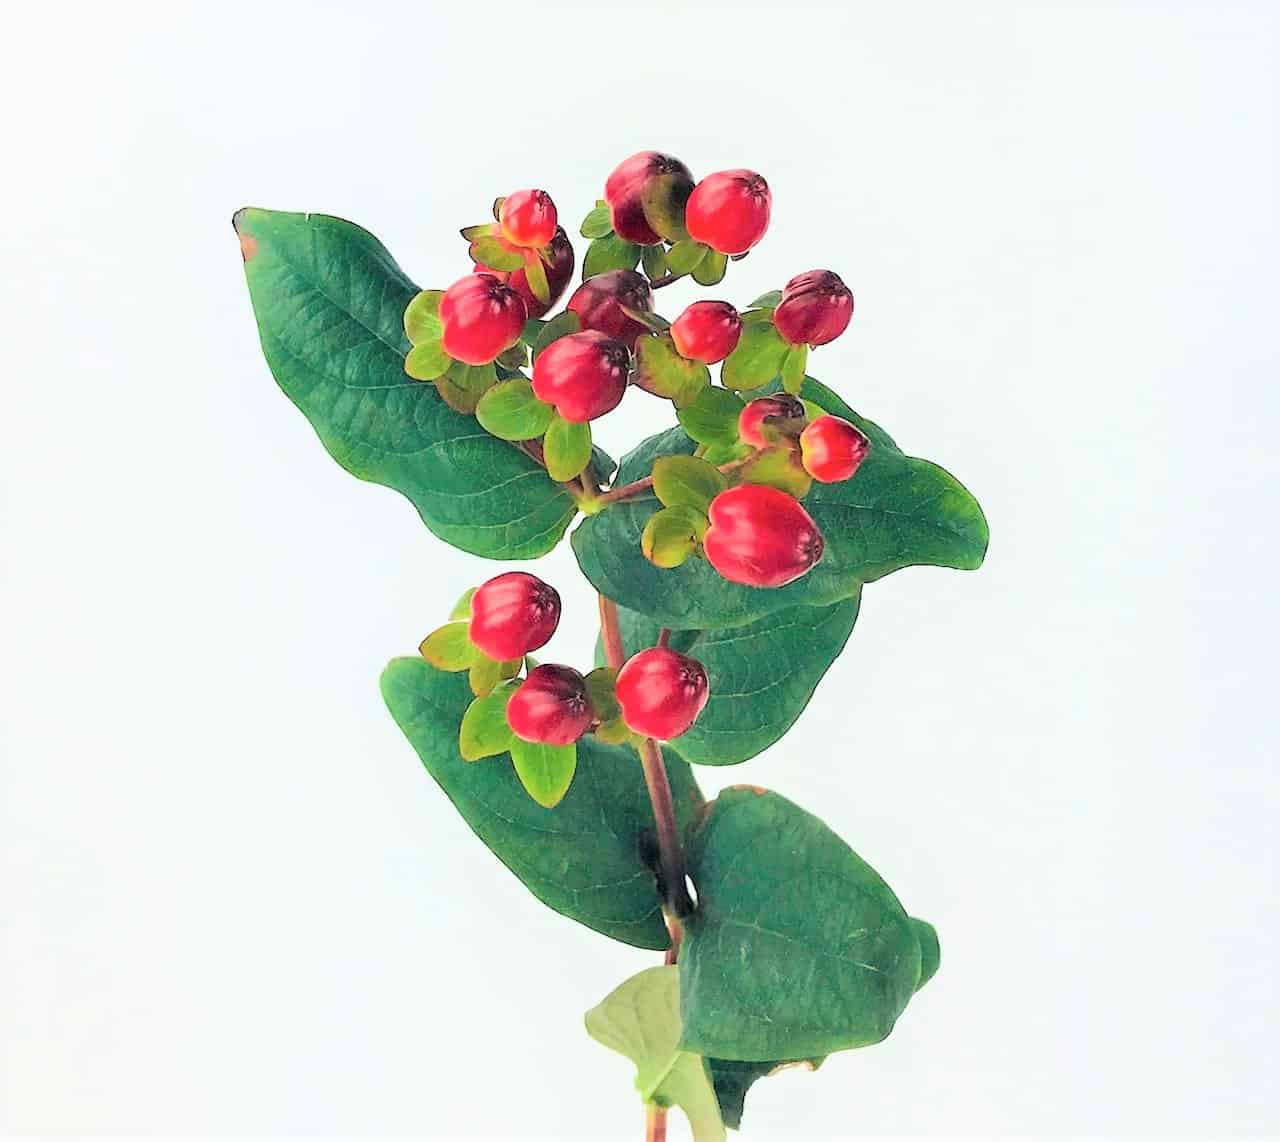 Hypericum Berry Information, Hypericum Cut Flower